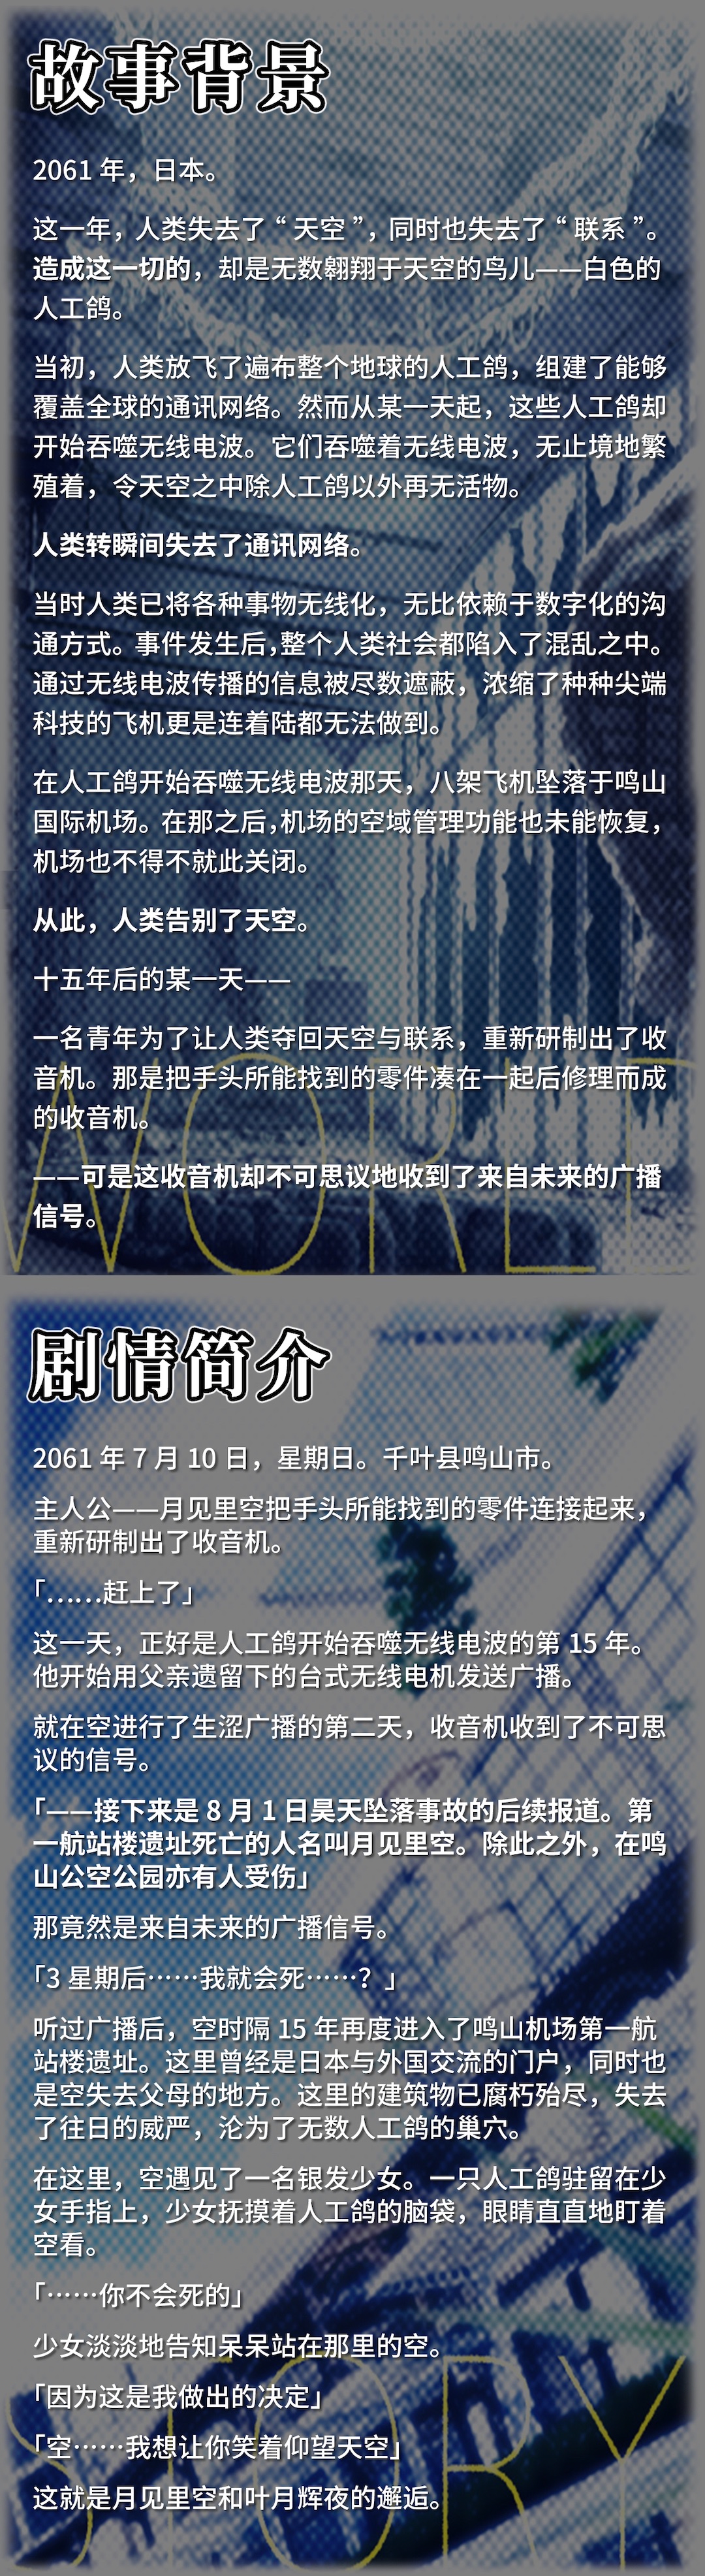 科幻题材视觉小说《未来广播与人工鸽》中文版Steam页面上线 2月17日发售 二次世界 第4张